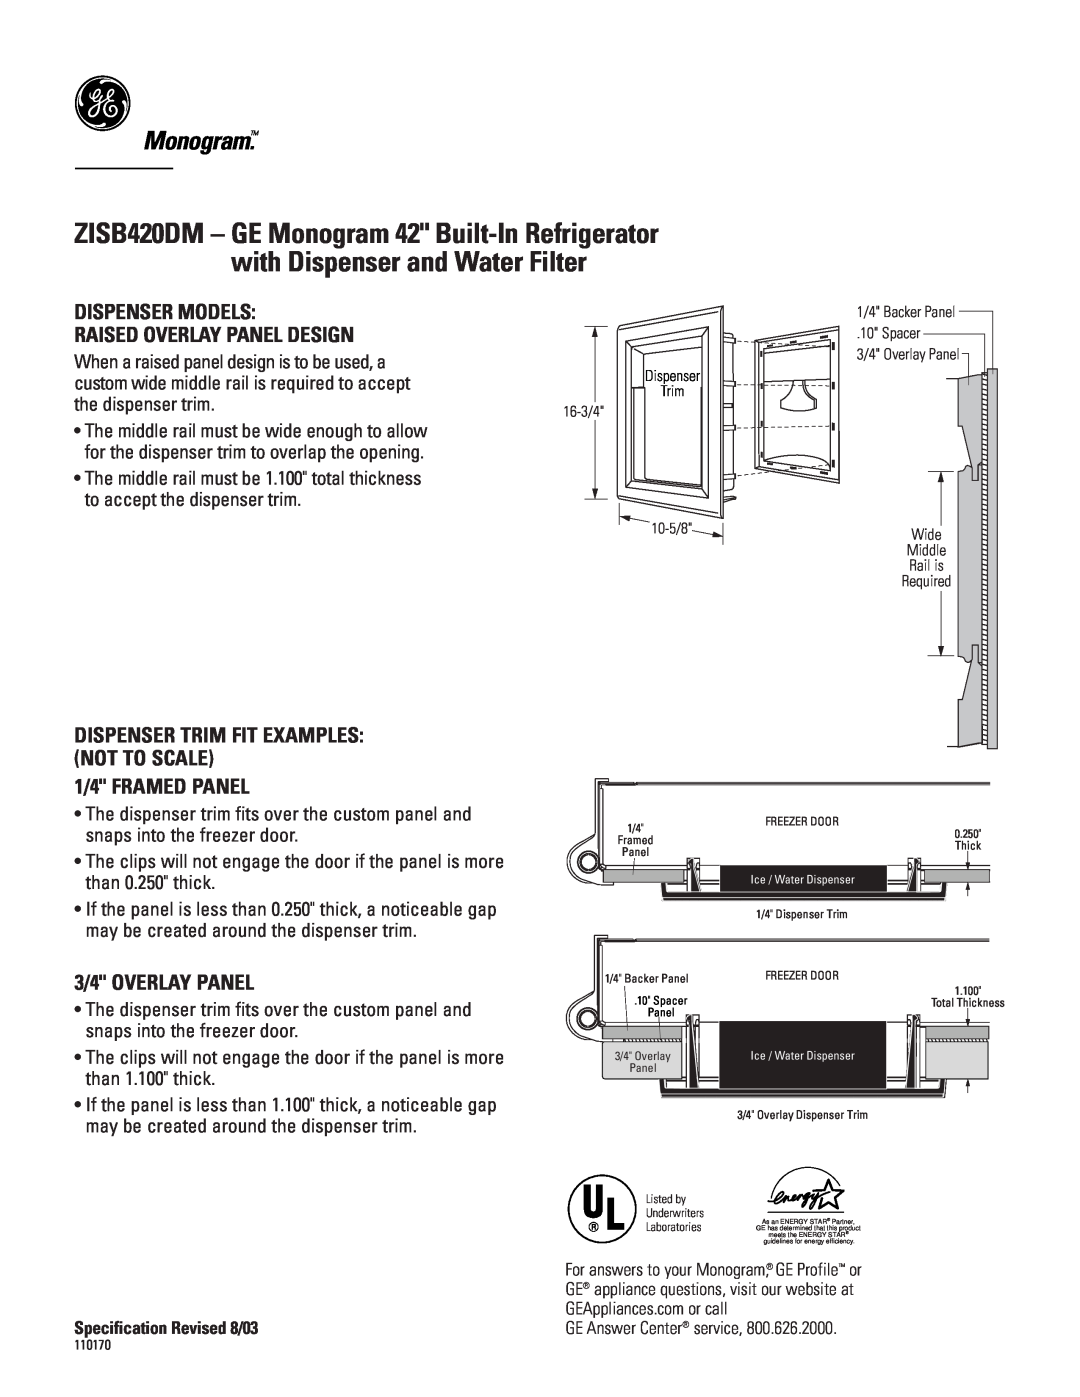 GE Monogram ZISB420DM Monogram, Dispenser Models, Raised Overlay Panel Design, 1/4 FRAMED PANEL, 3/4 OVERLAY PANEL 